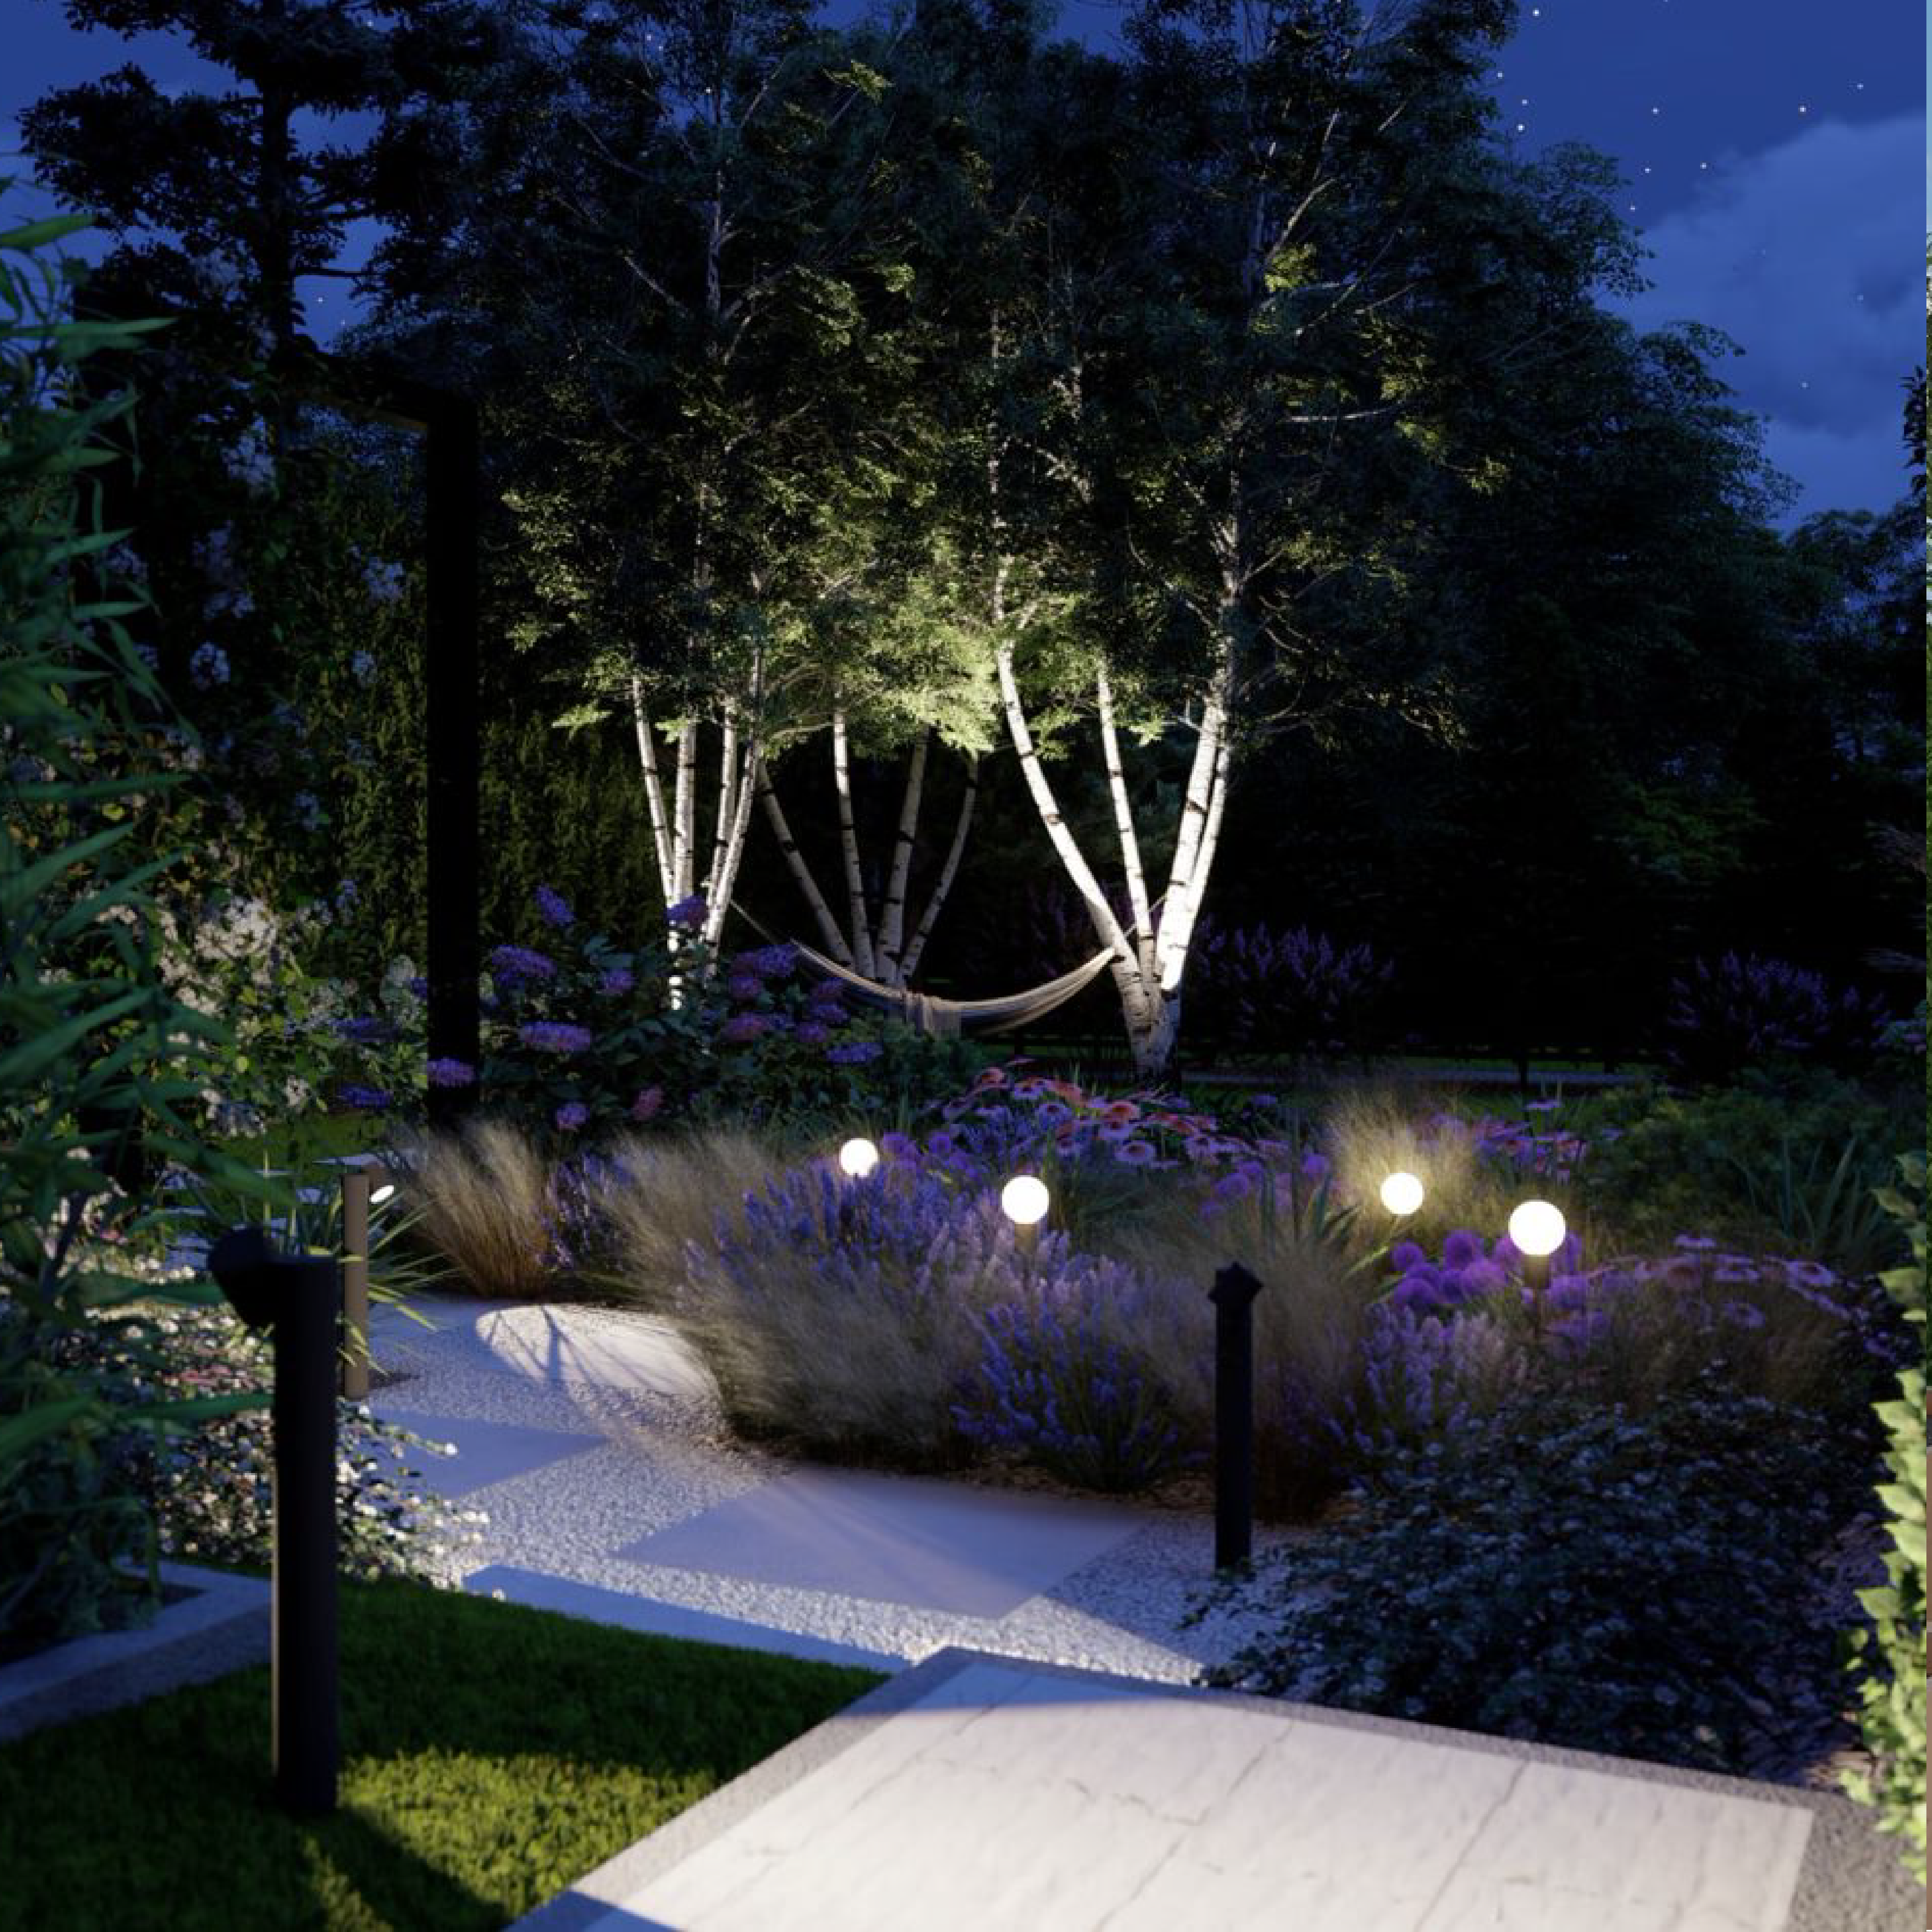 ogród nocą oświetlony lampami, oświetlenie nocne ogrodu, lampy w ogrodzie